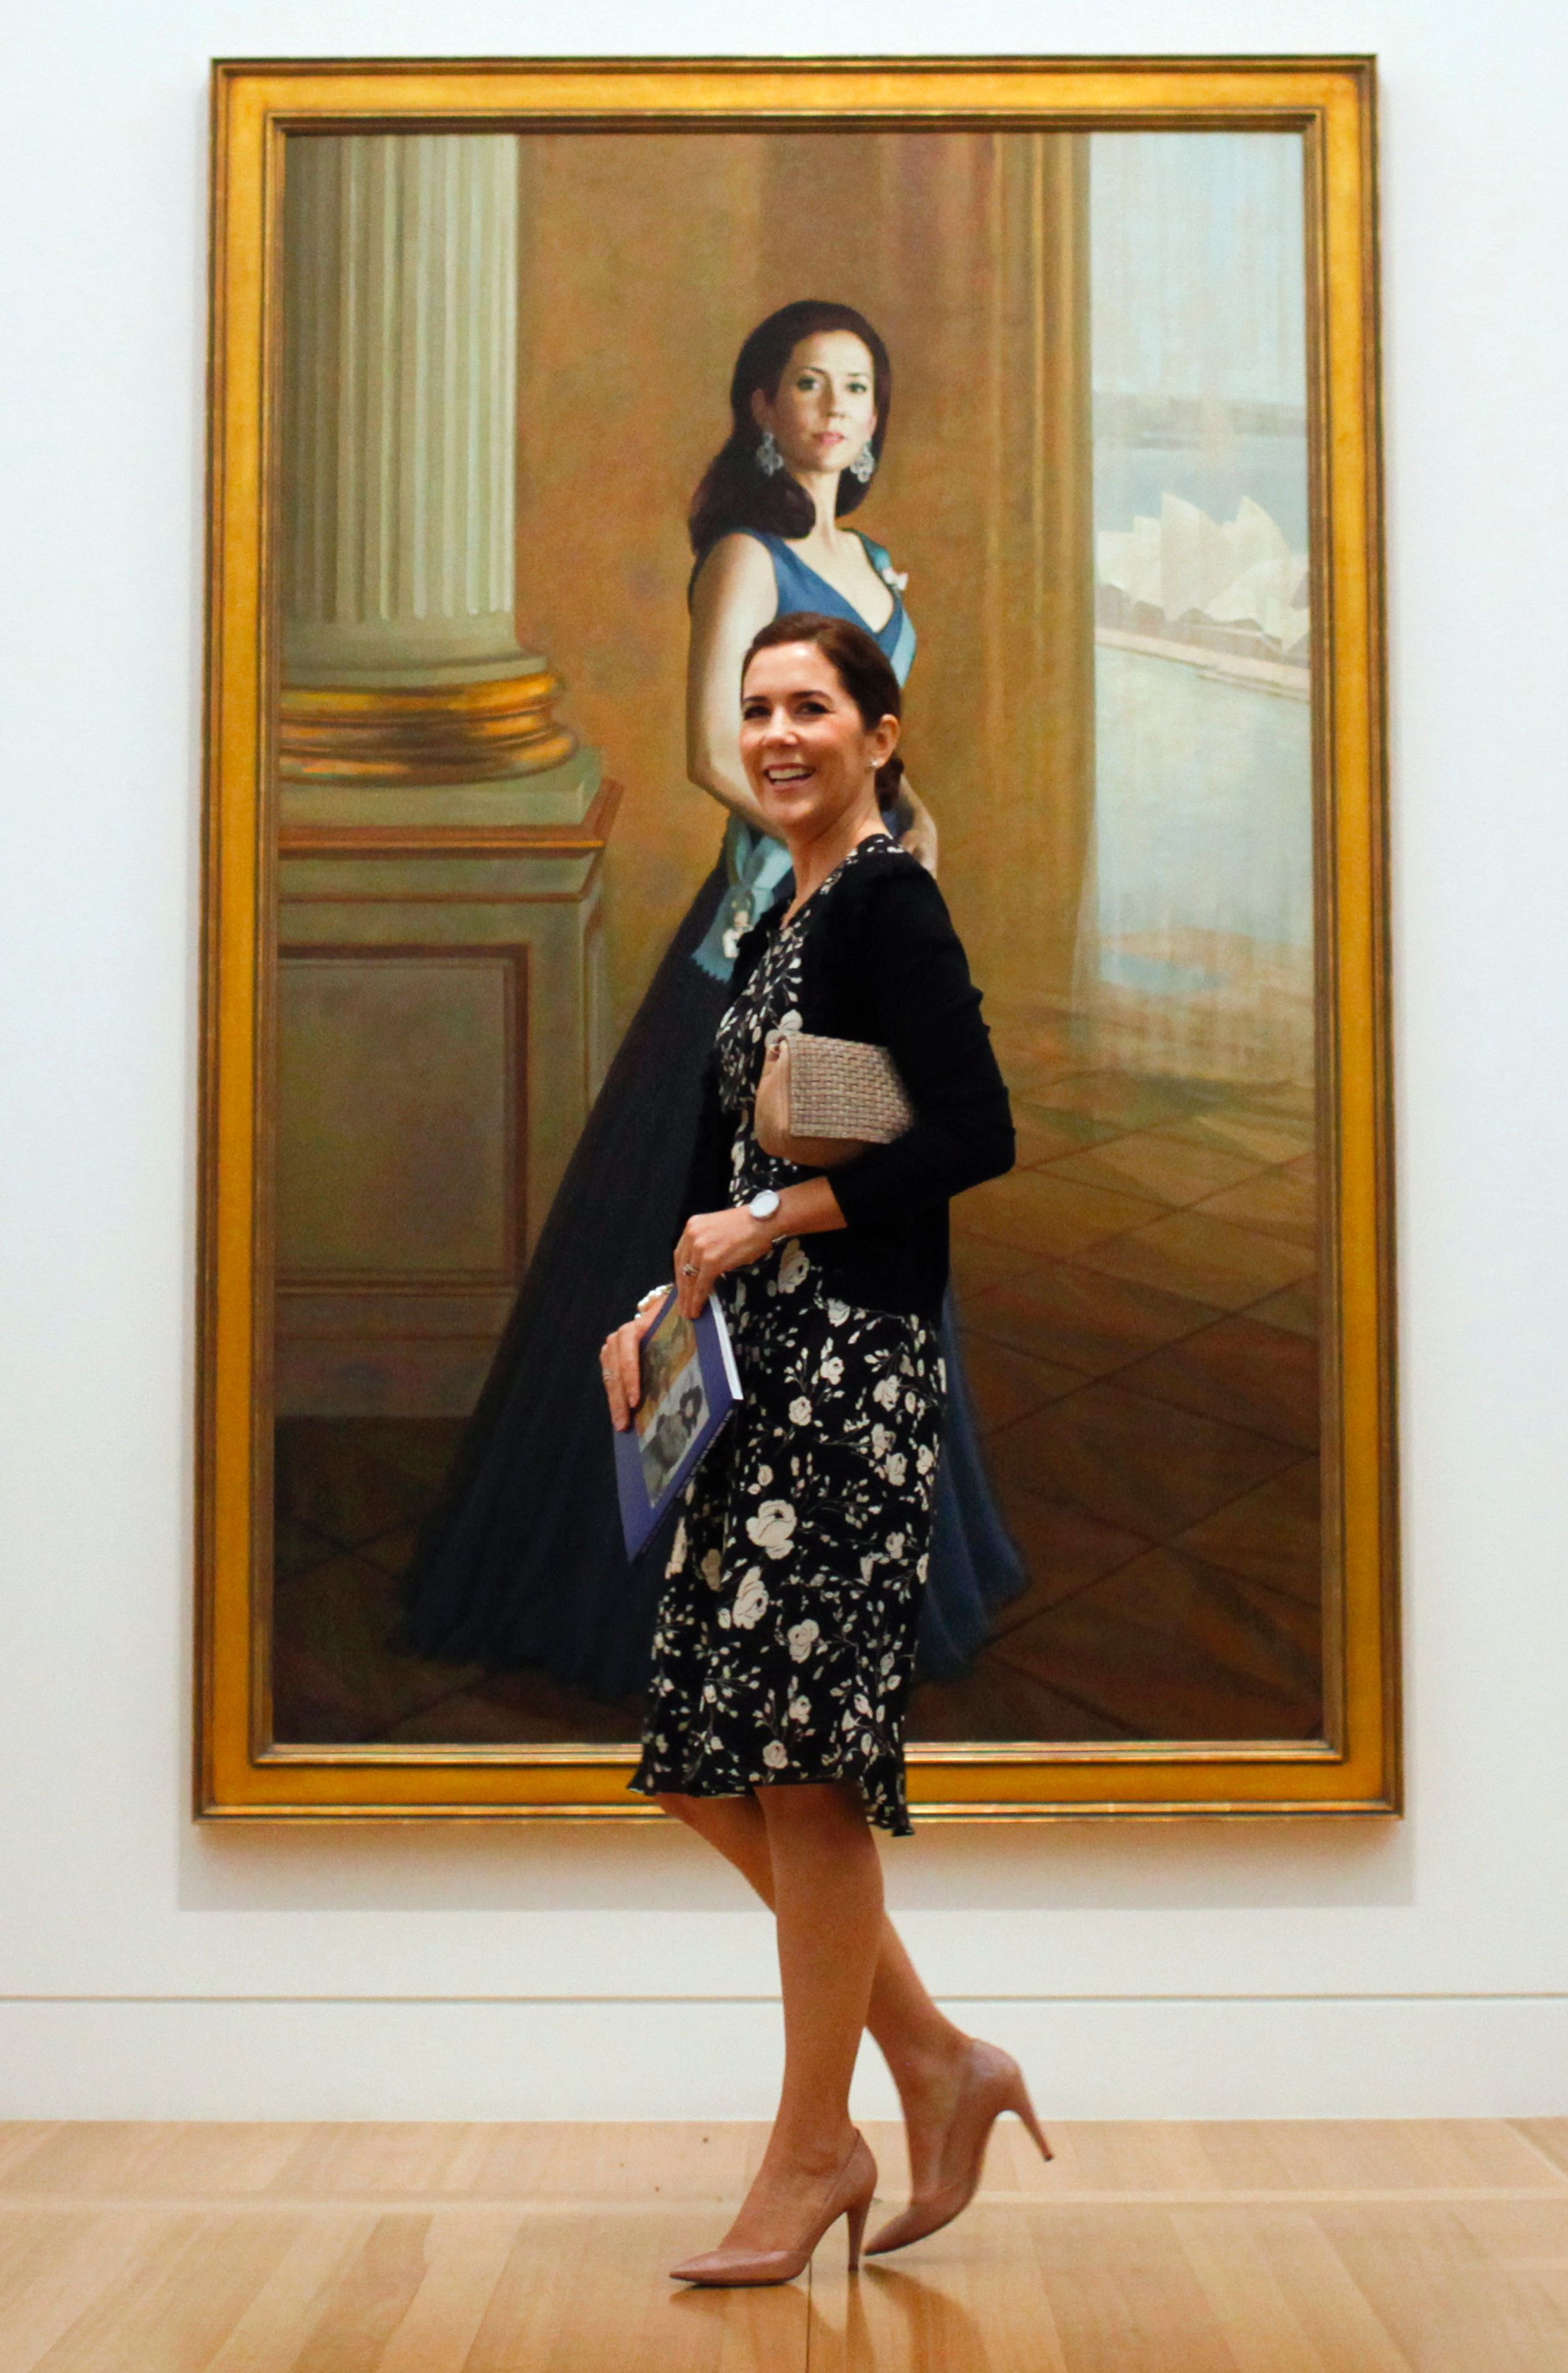 In het Australische Canberra poseert Mary voor een portret van zichzelf, gemaakt door de